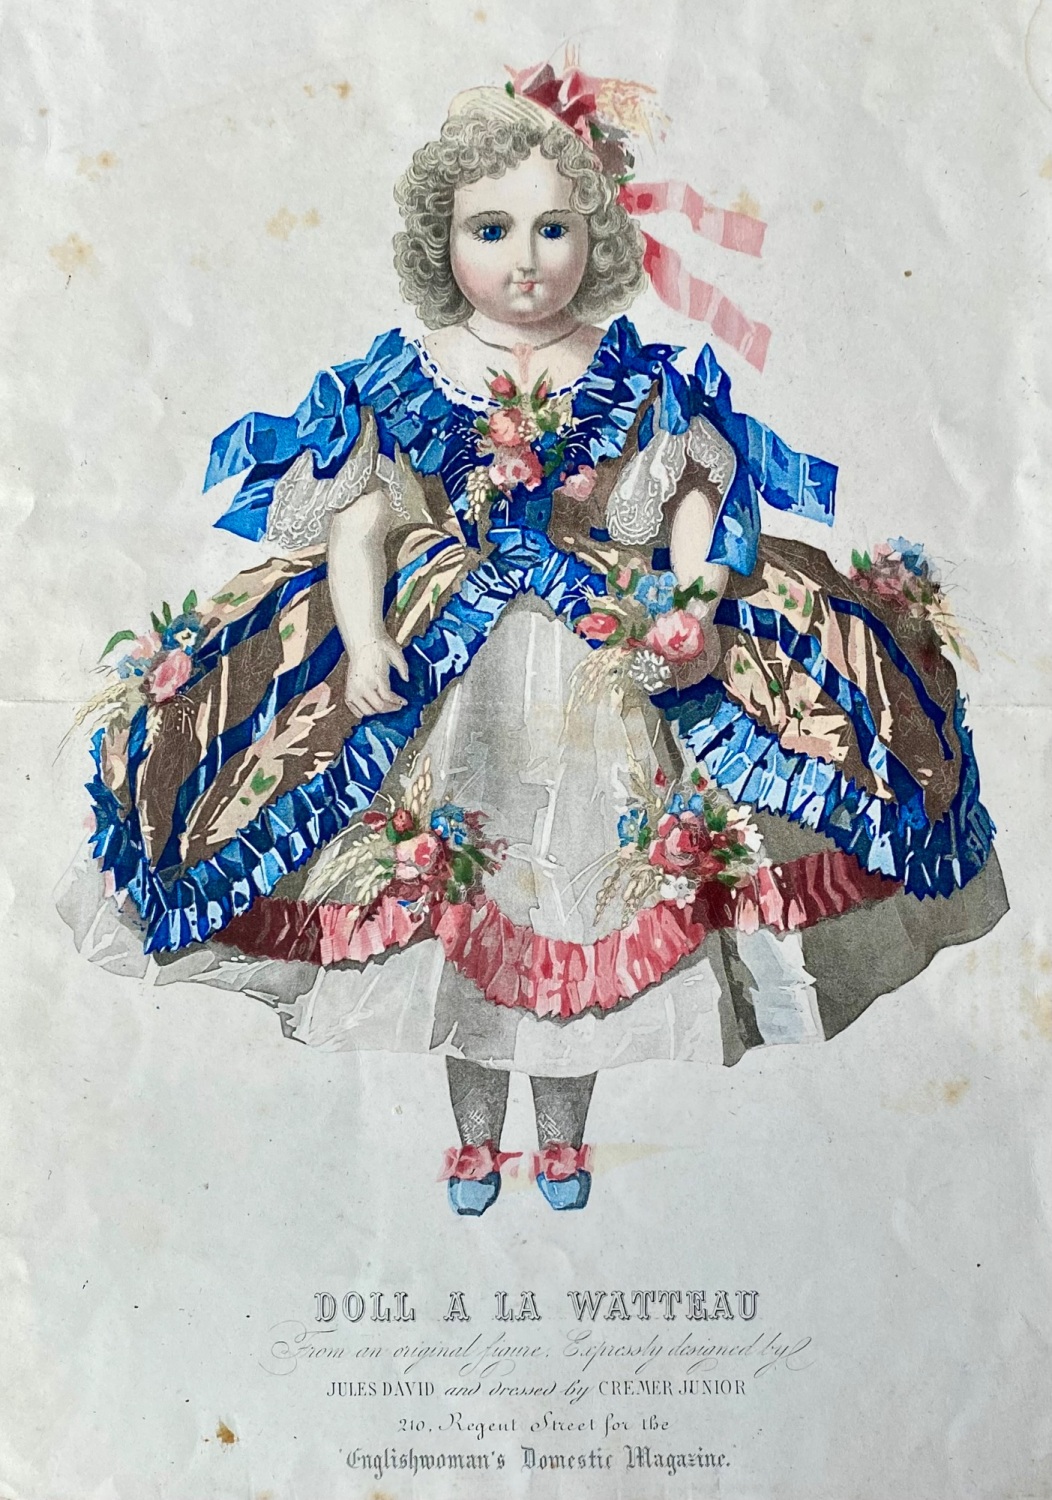 Doll A La Watteau, Fashion Plate from 